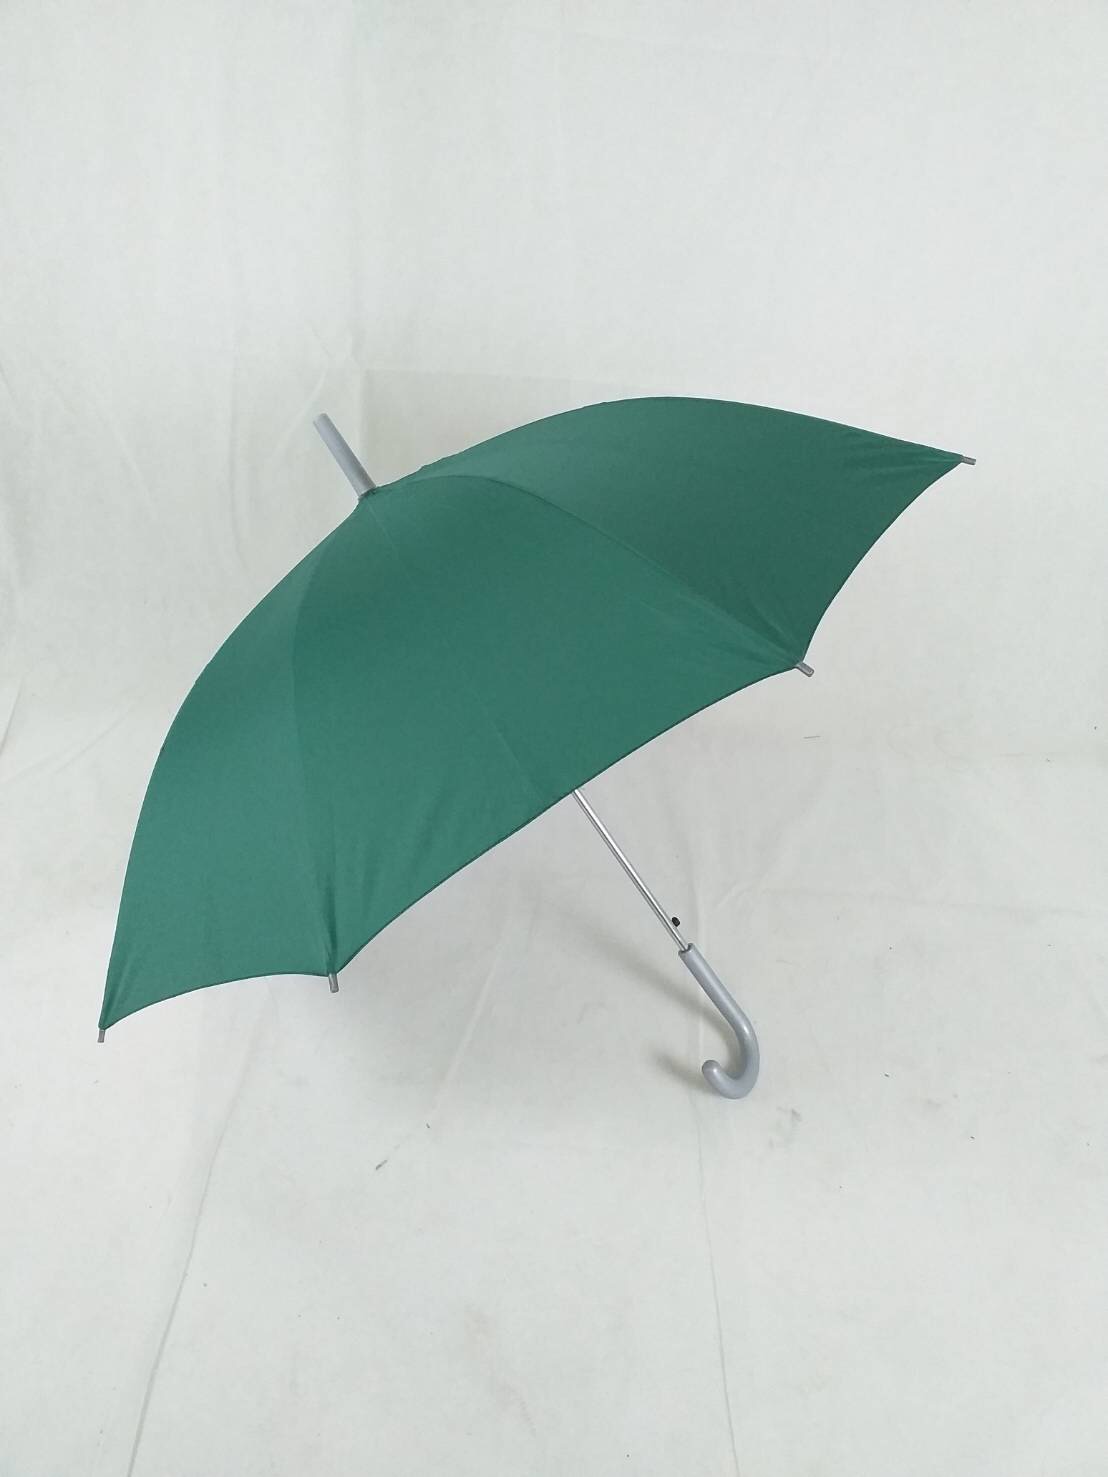 ร่มสปริง 22นิ้ว ร่มยาว ผ้าUV สีพื้น กันแดด ทนฝน ร่มกันแดด สีสันสดใส ผลิตในไทย umbrella  รหัส 2201